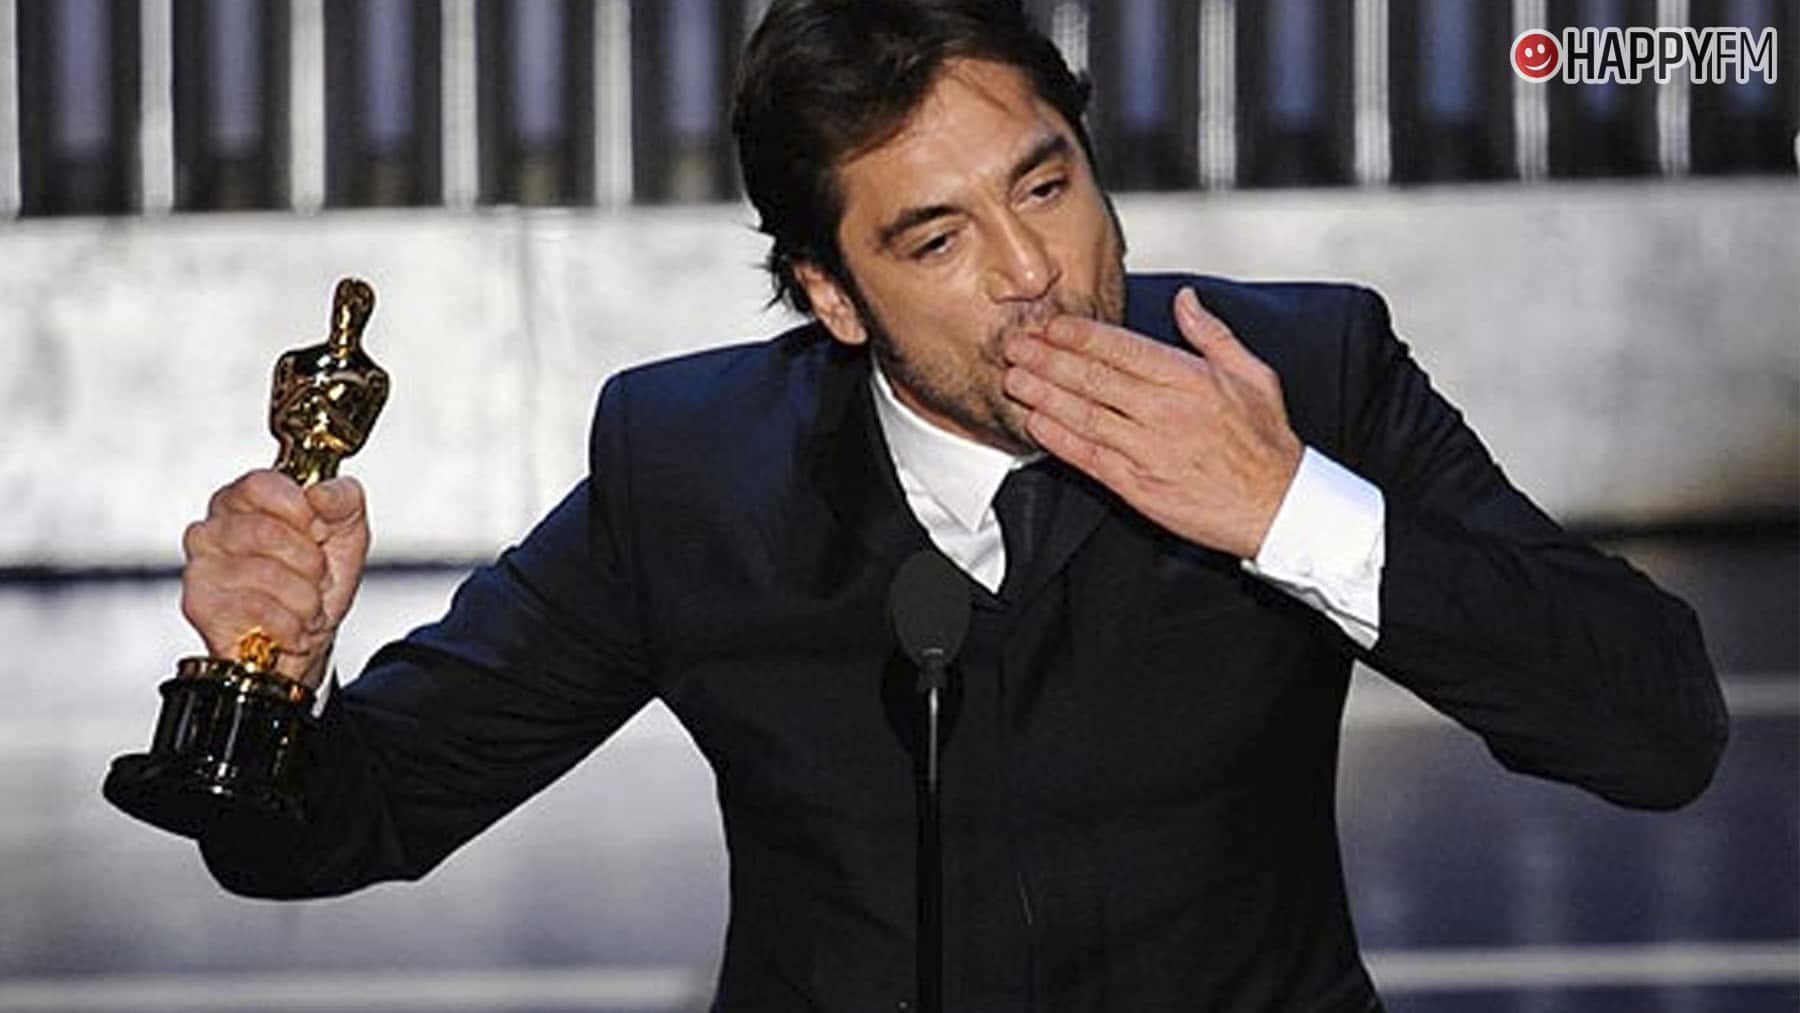 ‘Oscars 2022’: cómo ver en directo en España (tv y online), fecha y horarios